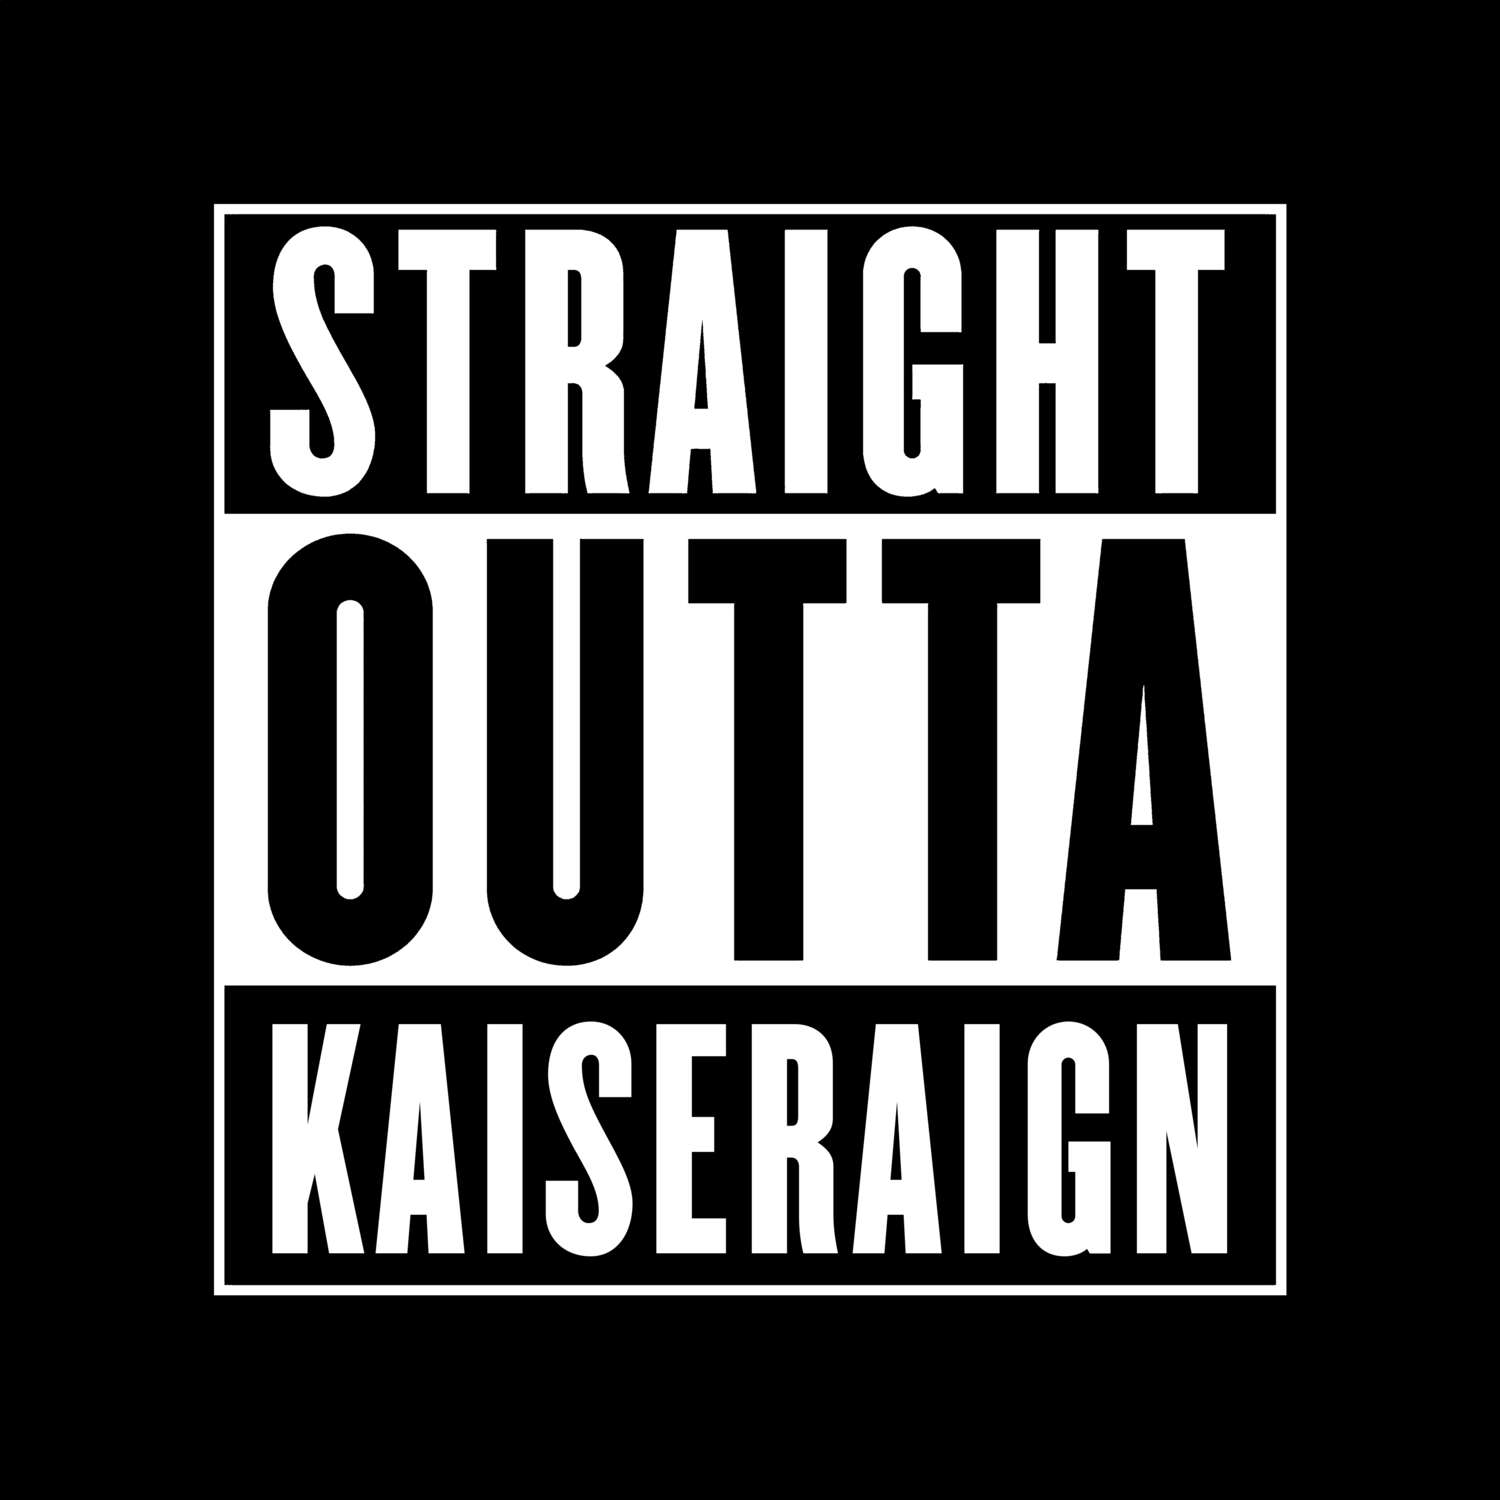 Kaiseraign T-Shirt »Straight Outta«